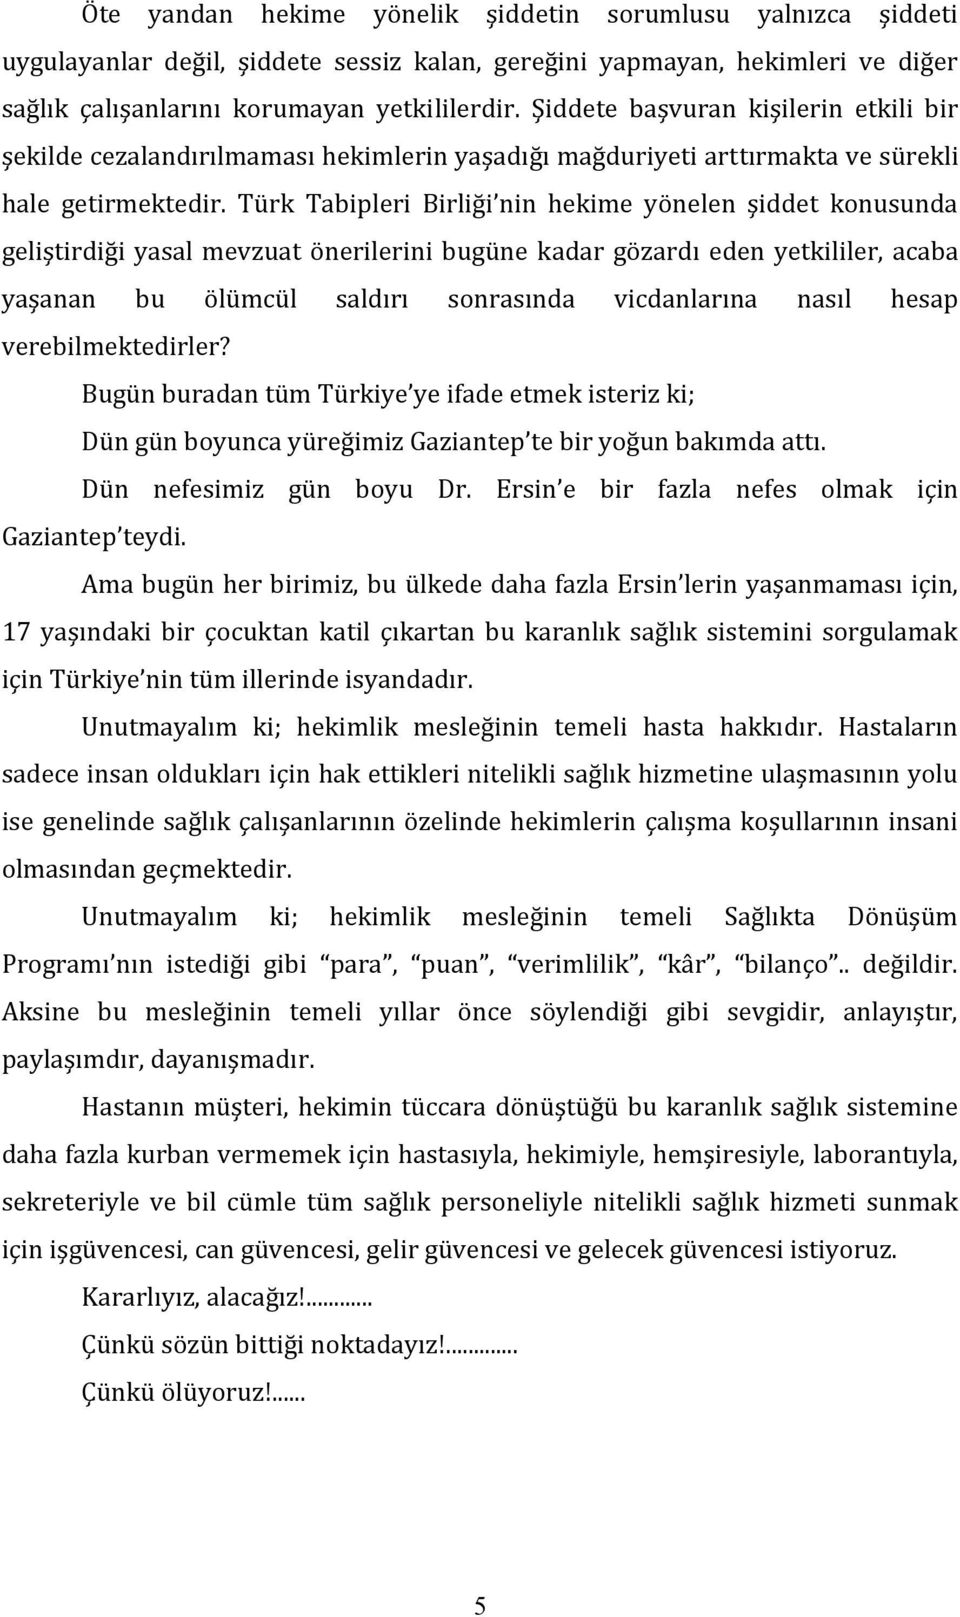 Türk Tabipleri Birliği nin hekime yönelen şiddet konusunda geliştirdiği yasal mevzuat önerilerini bugüne kadar gözardı eden yetkililer, acaba yaşanan bu ölümcül saldırı sonrasında vicdanlarına nasıl